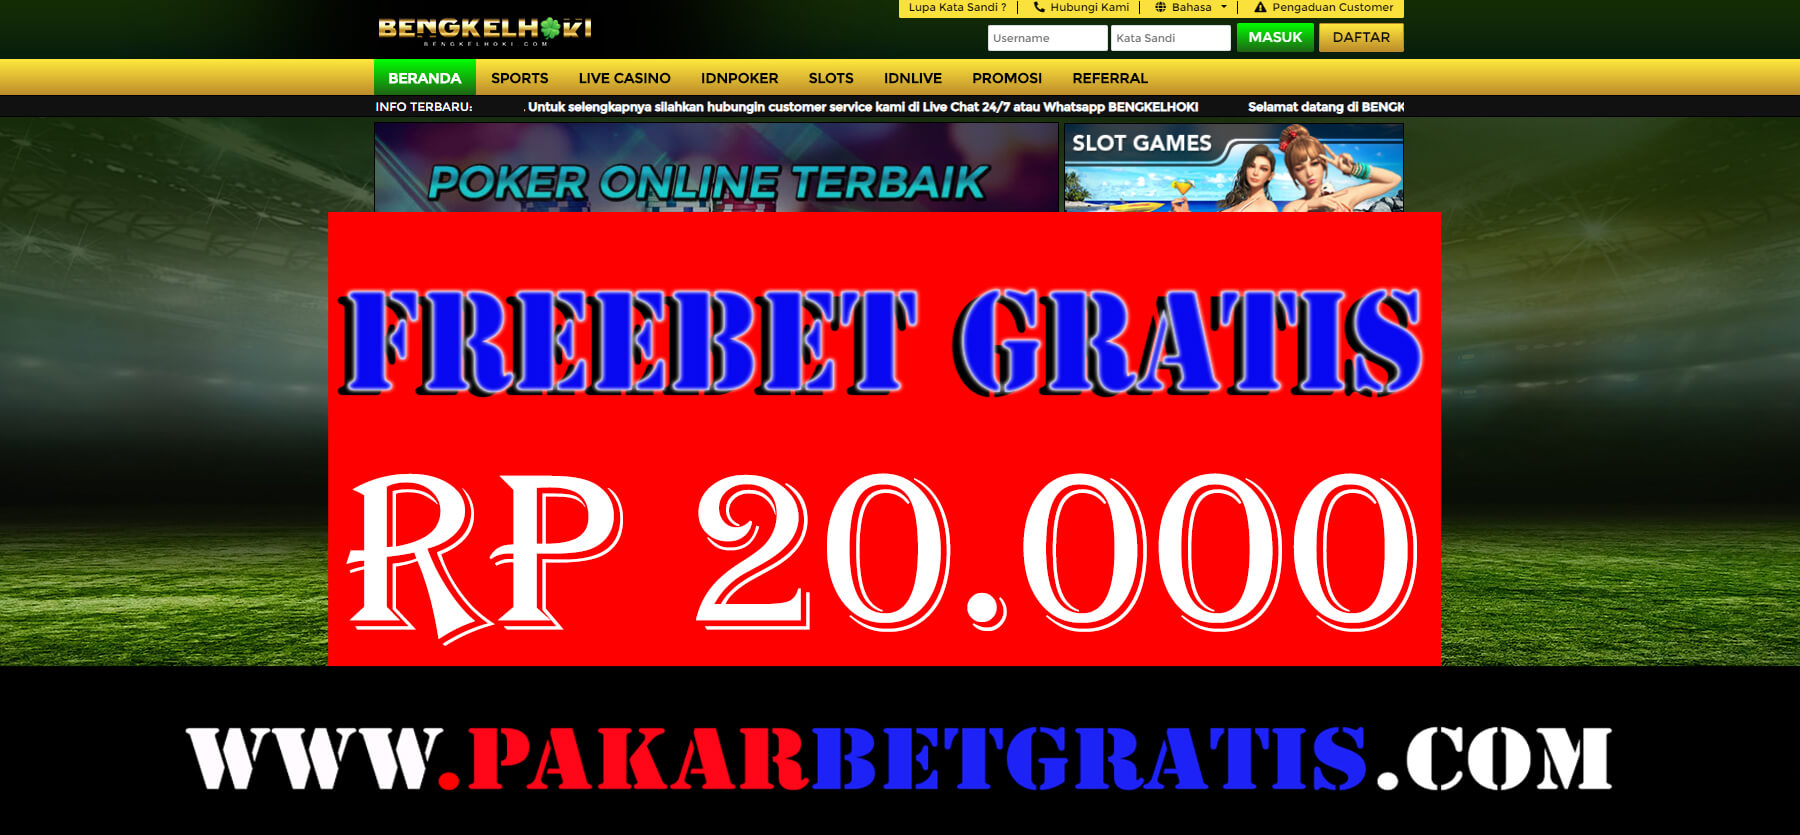 Freebet Gratis Bengkelhoki Rp 20.000 Tanpa Deposit